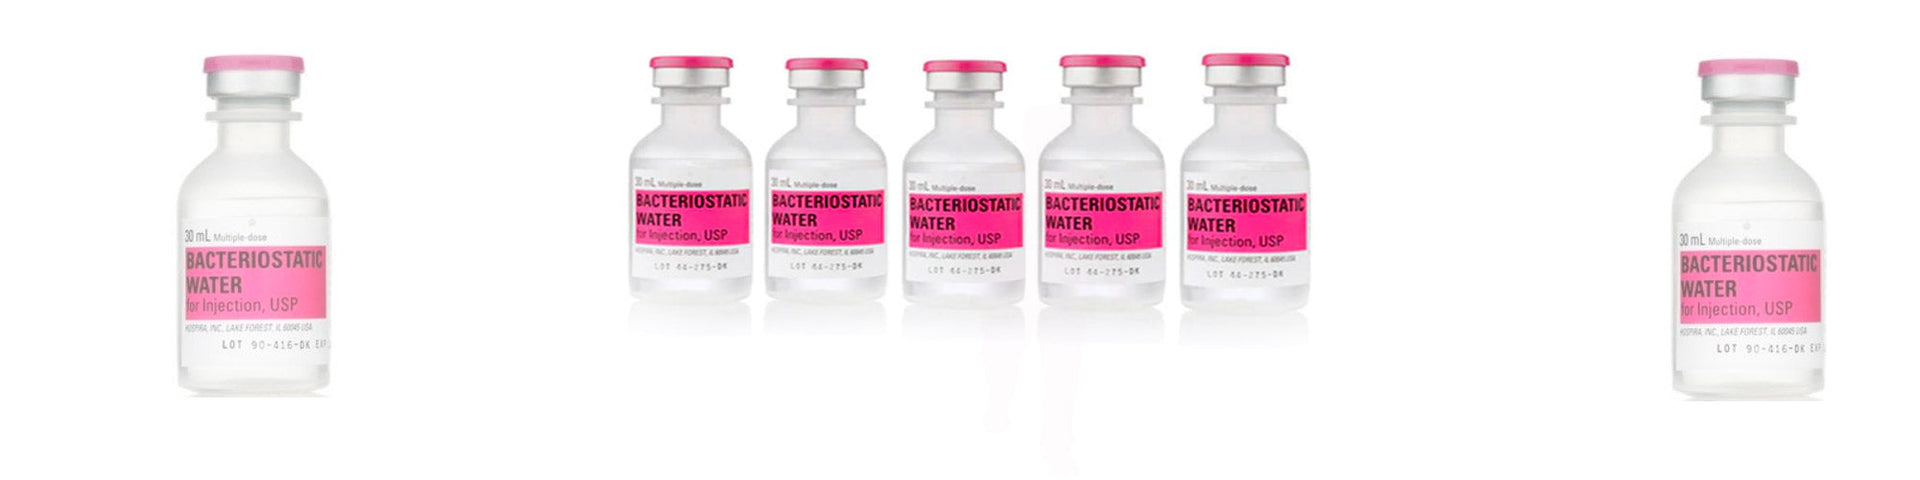 sterile water vials